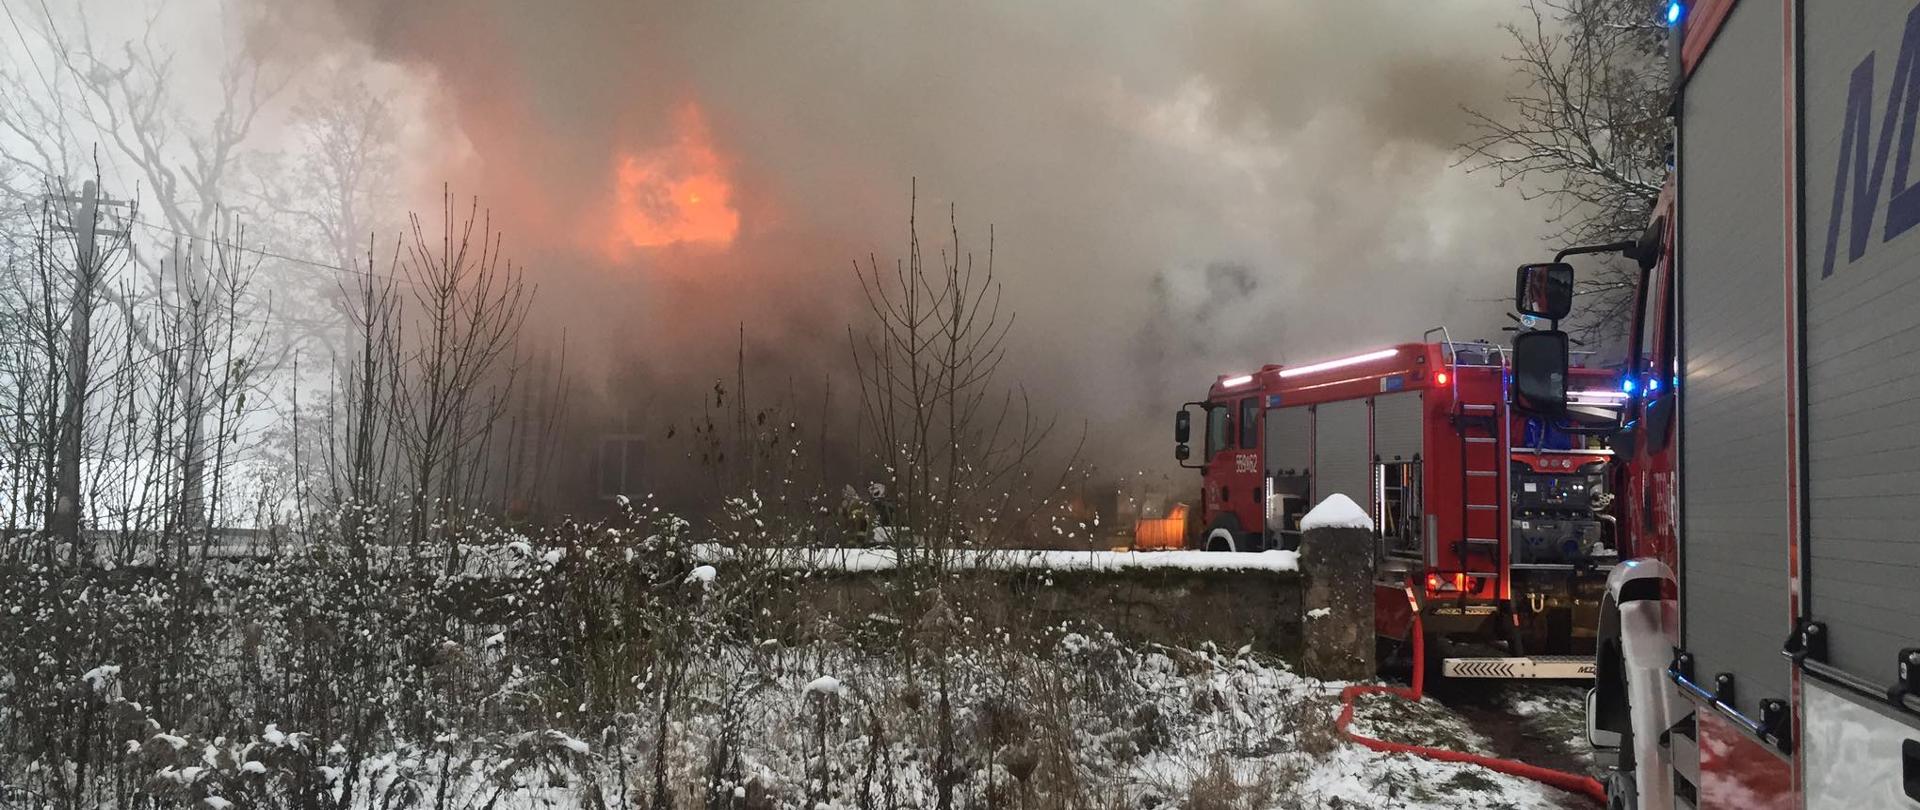 Zdjęcie przedstawia pożar budynku wielorodzinnego stojącego w płomieniach, po prawej stronie znajdują się wozy strażackie.